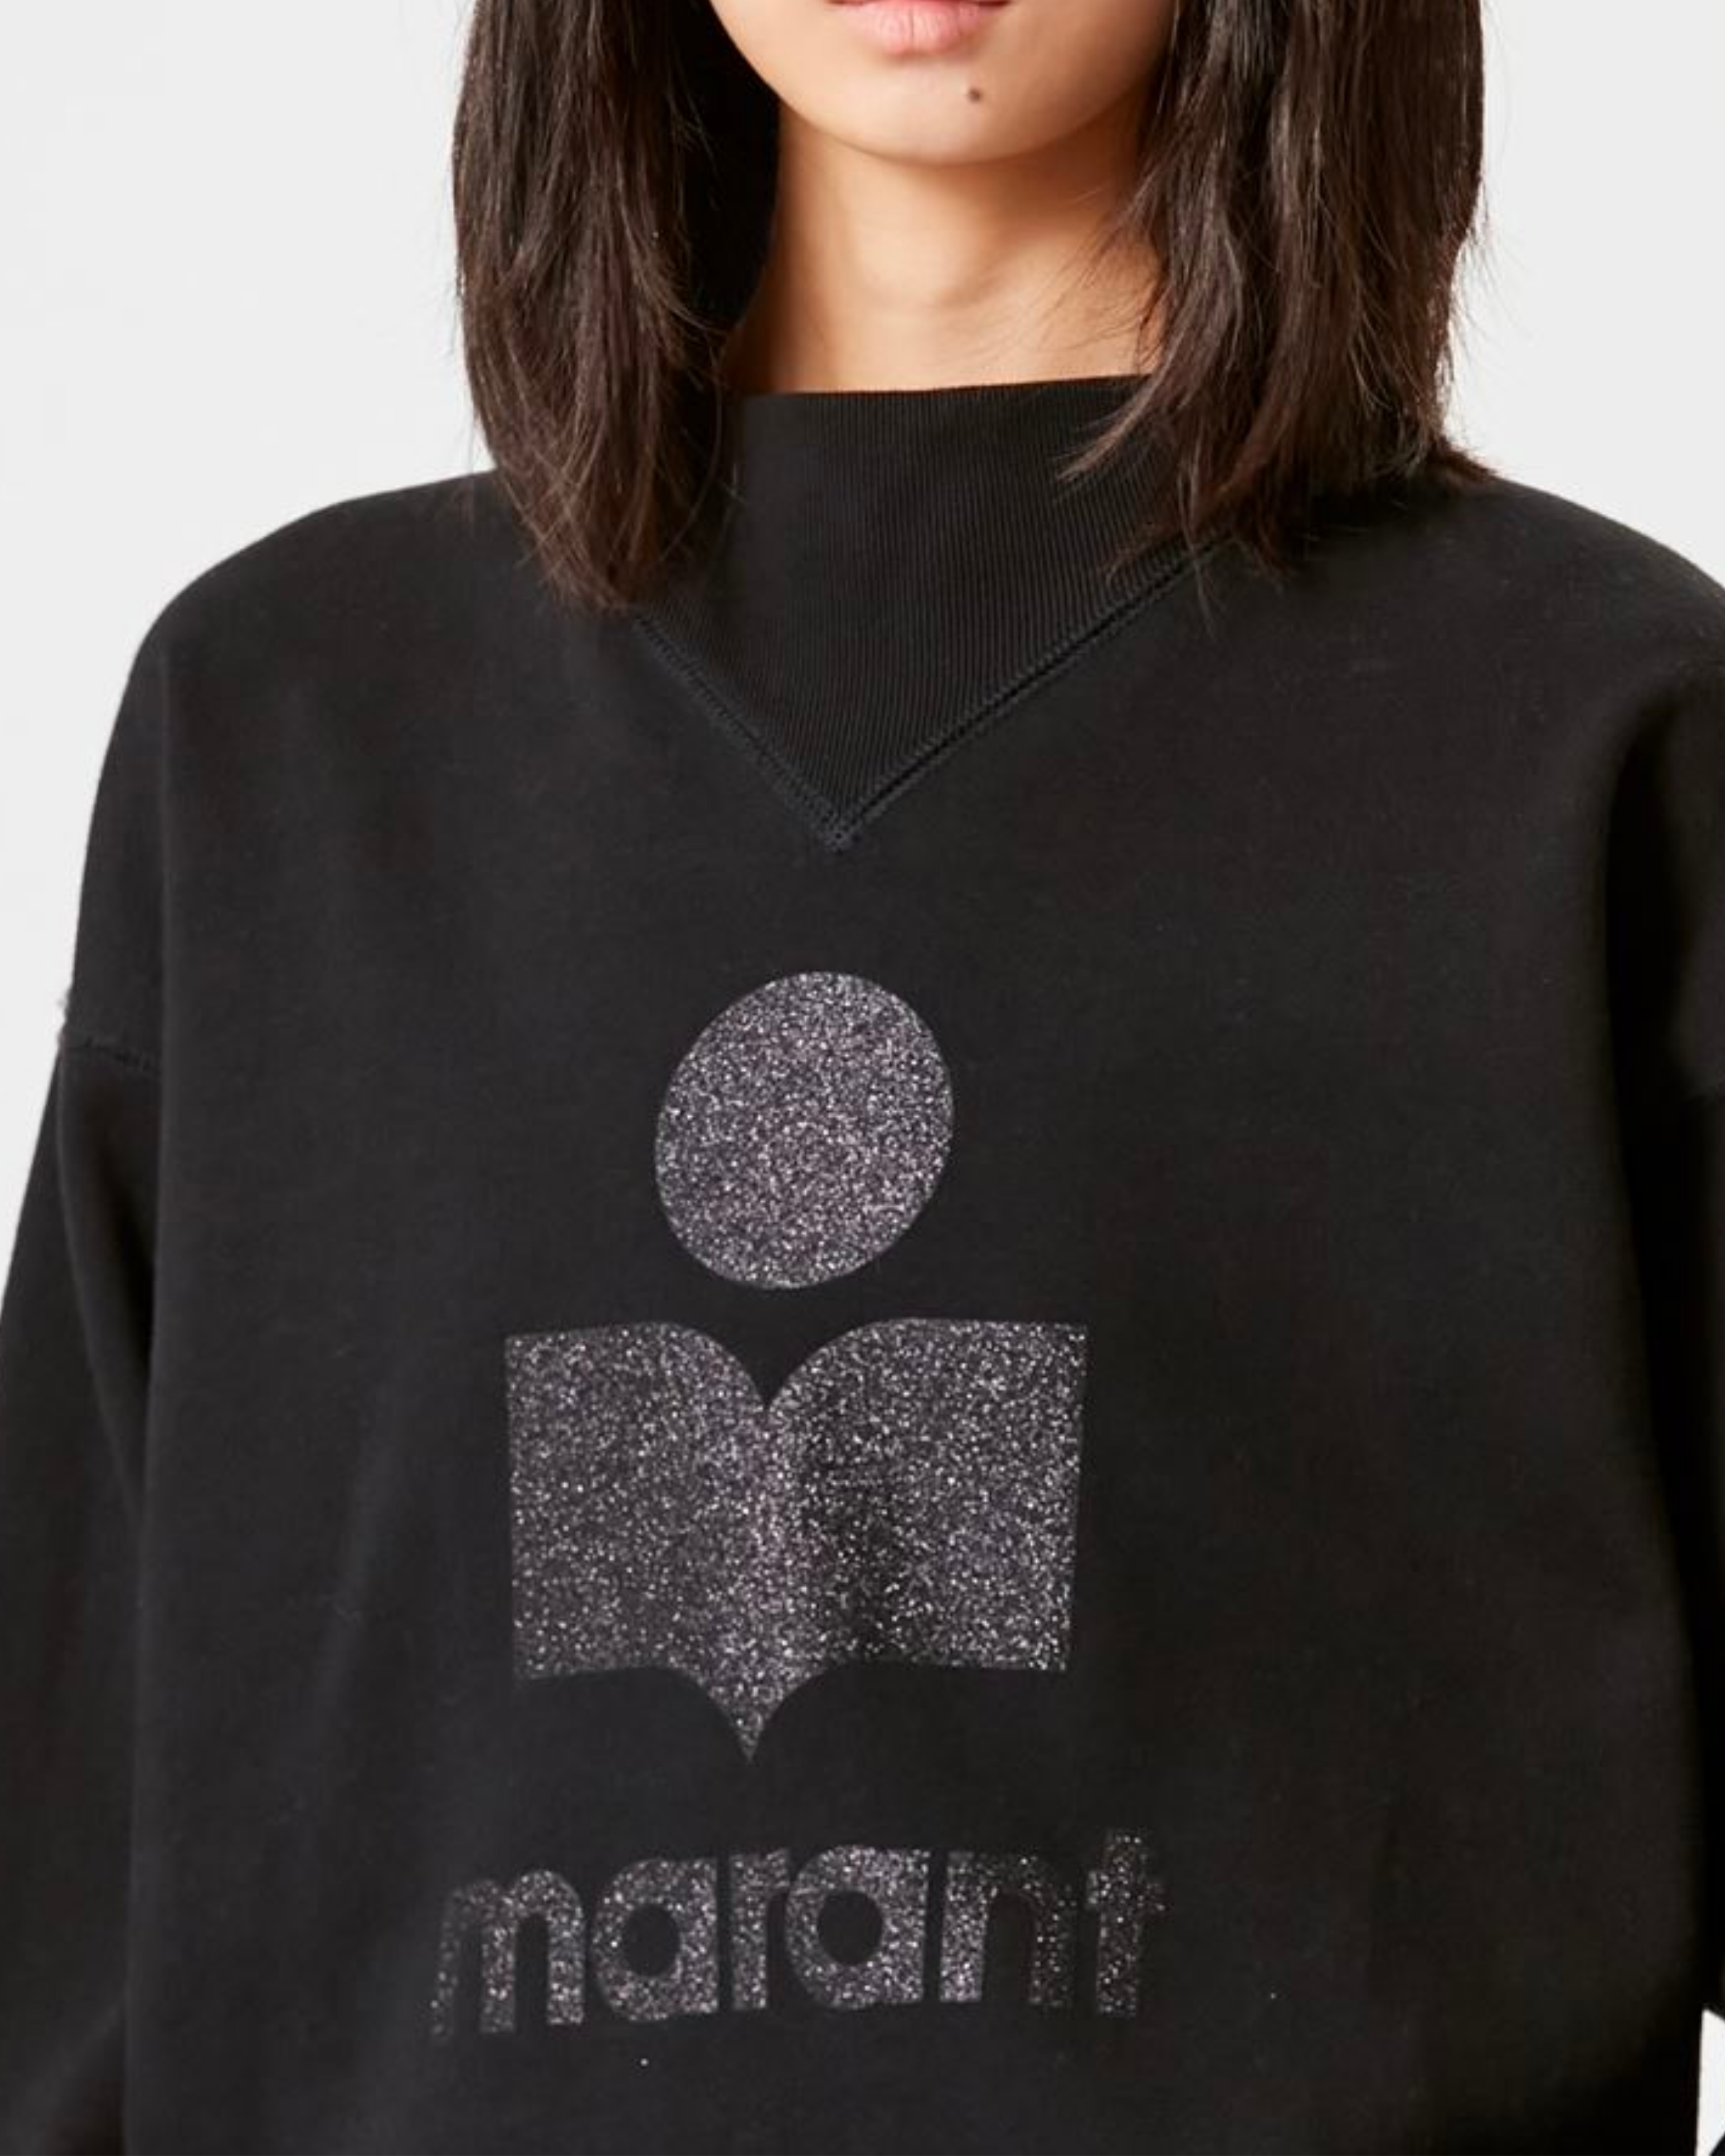 Isabel Marant Moby Logo Sweatshirt in Black Glitter